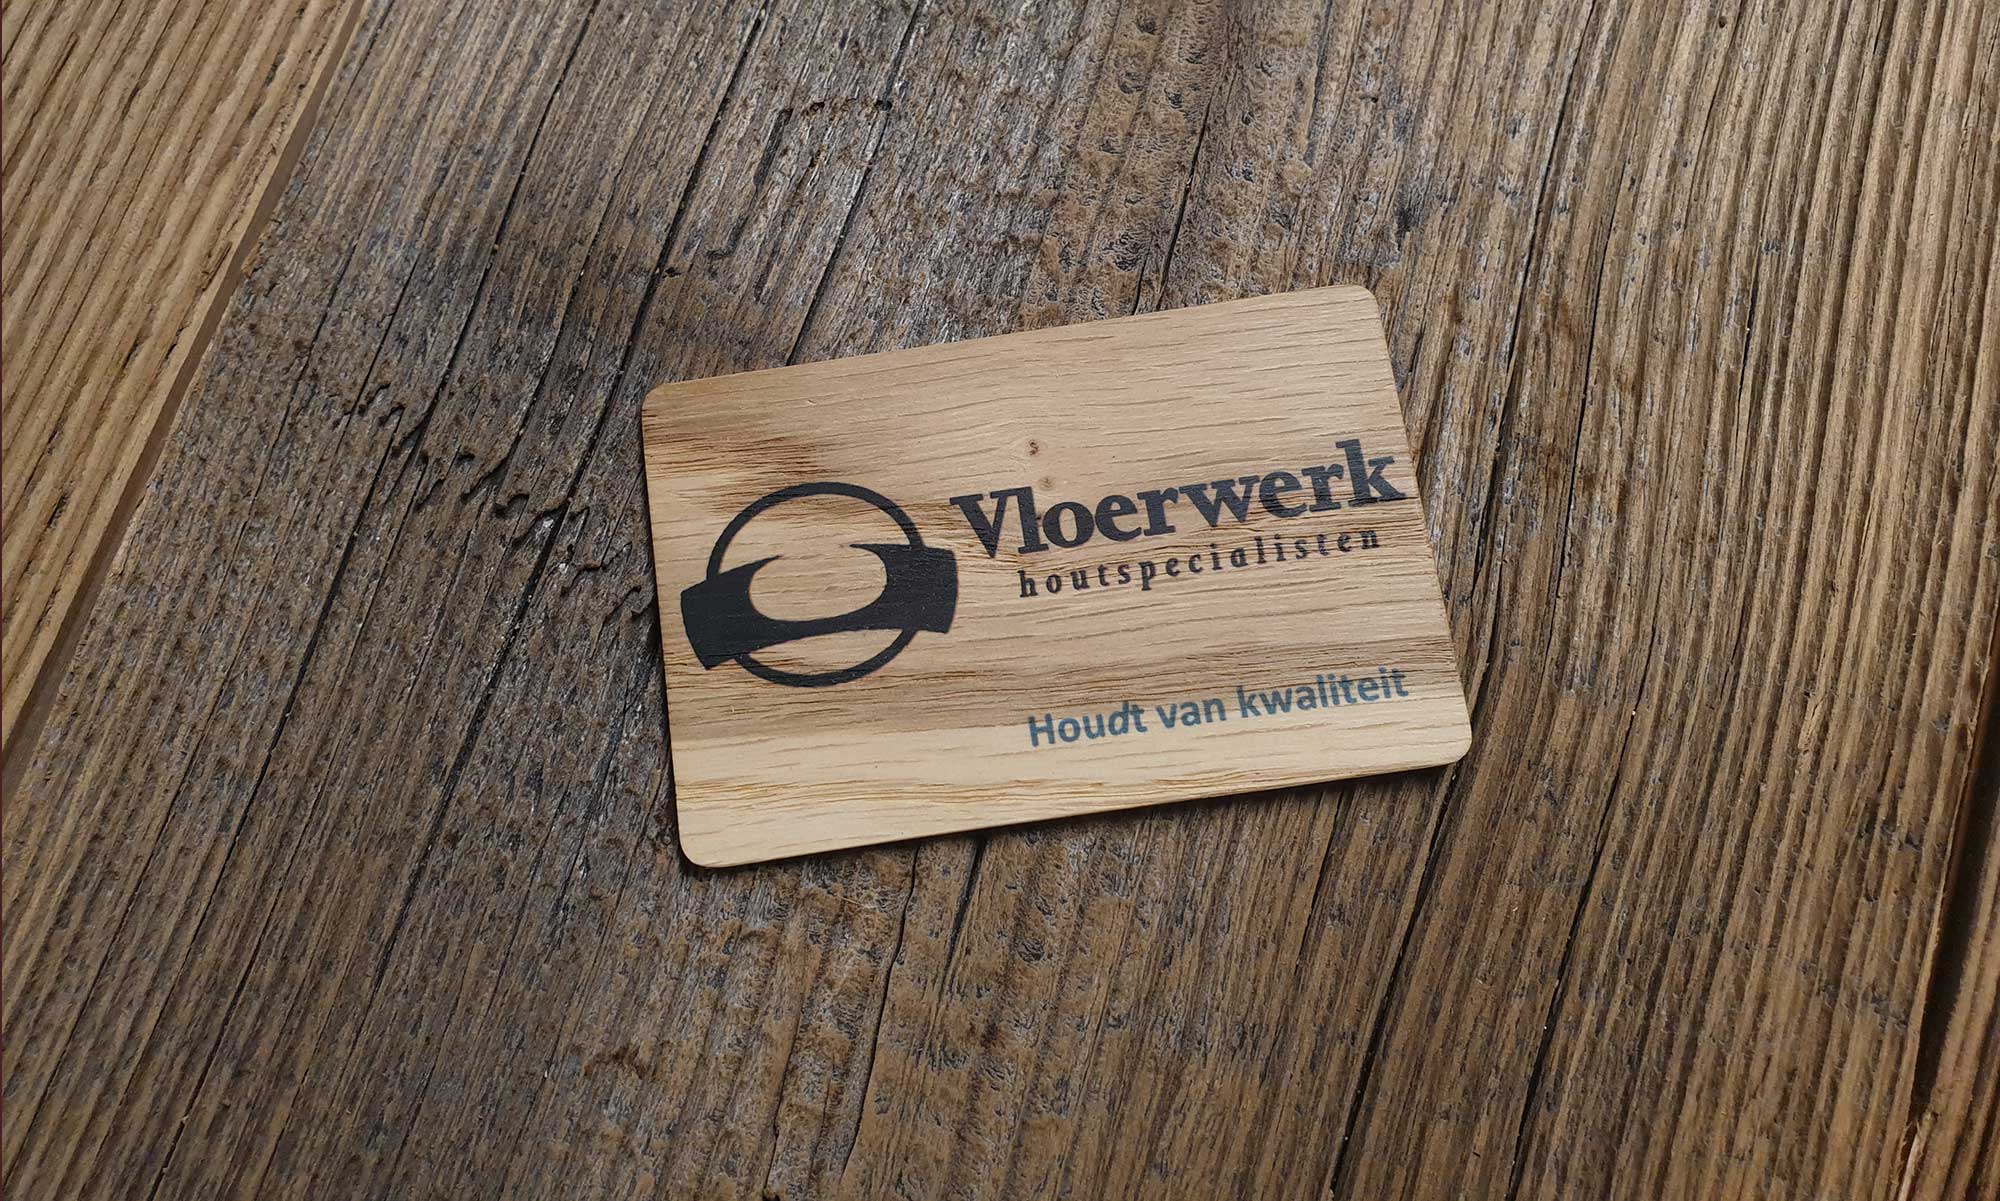 vloerwerk.nl te Hem